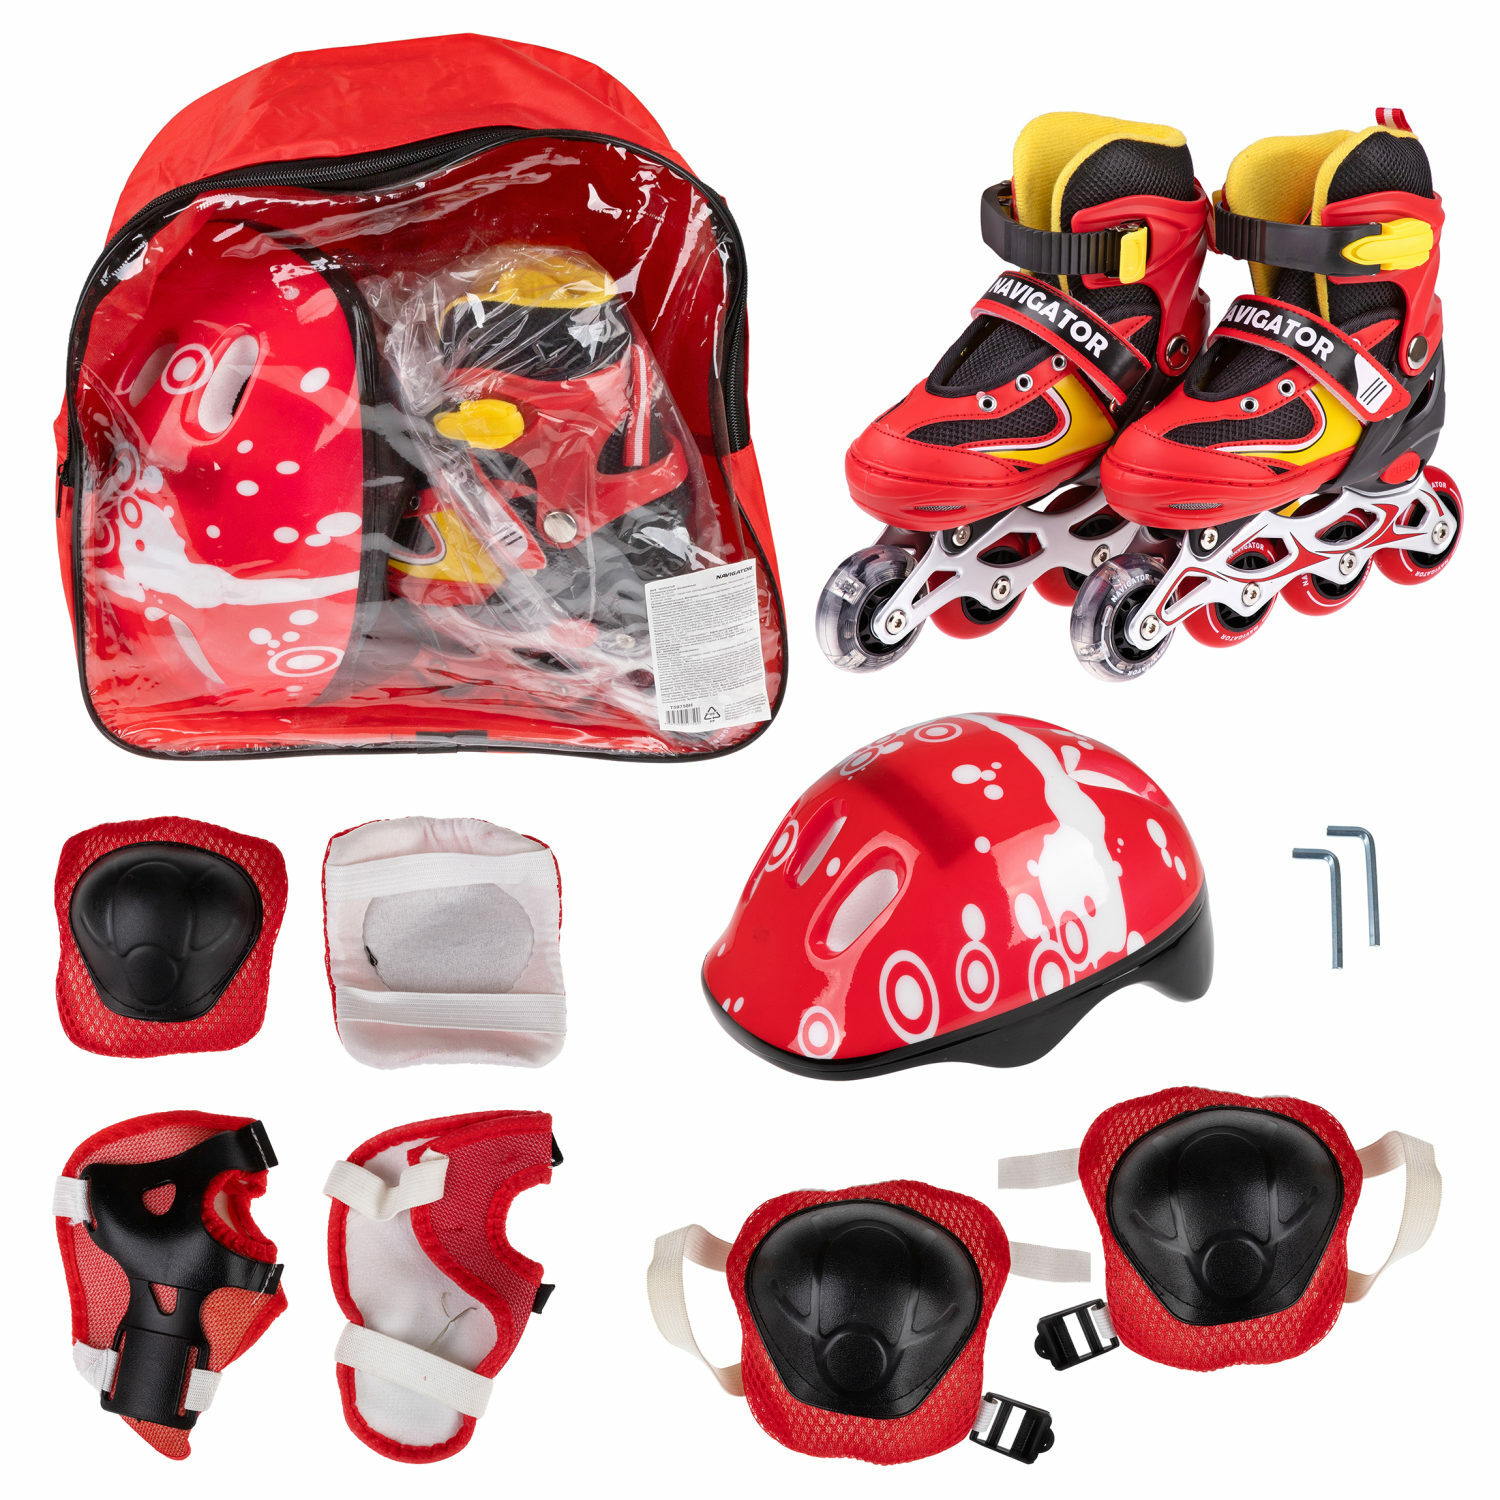 Ролики Navigator детские раздвижные 30 - 33 размер с защитой и шлемом красный - фото 3